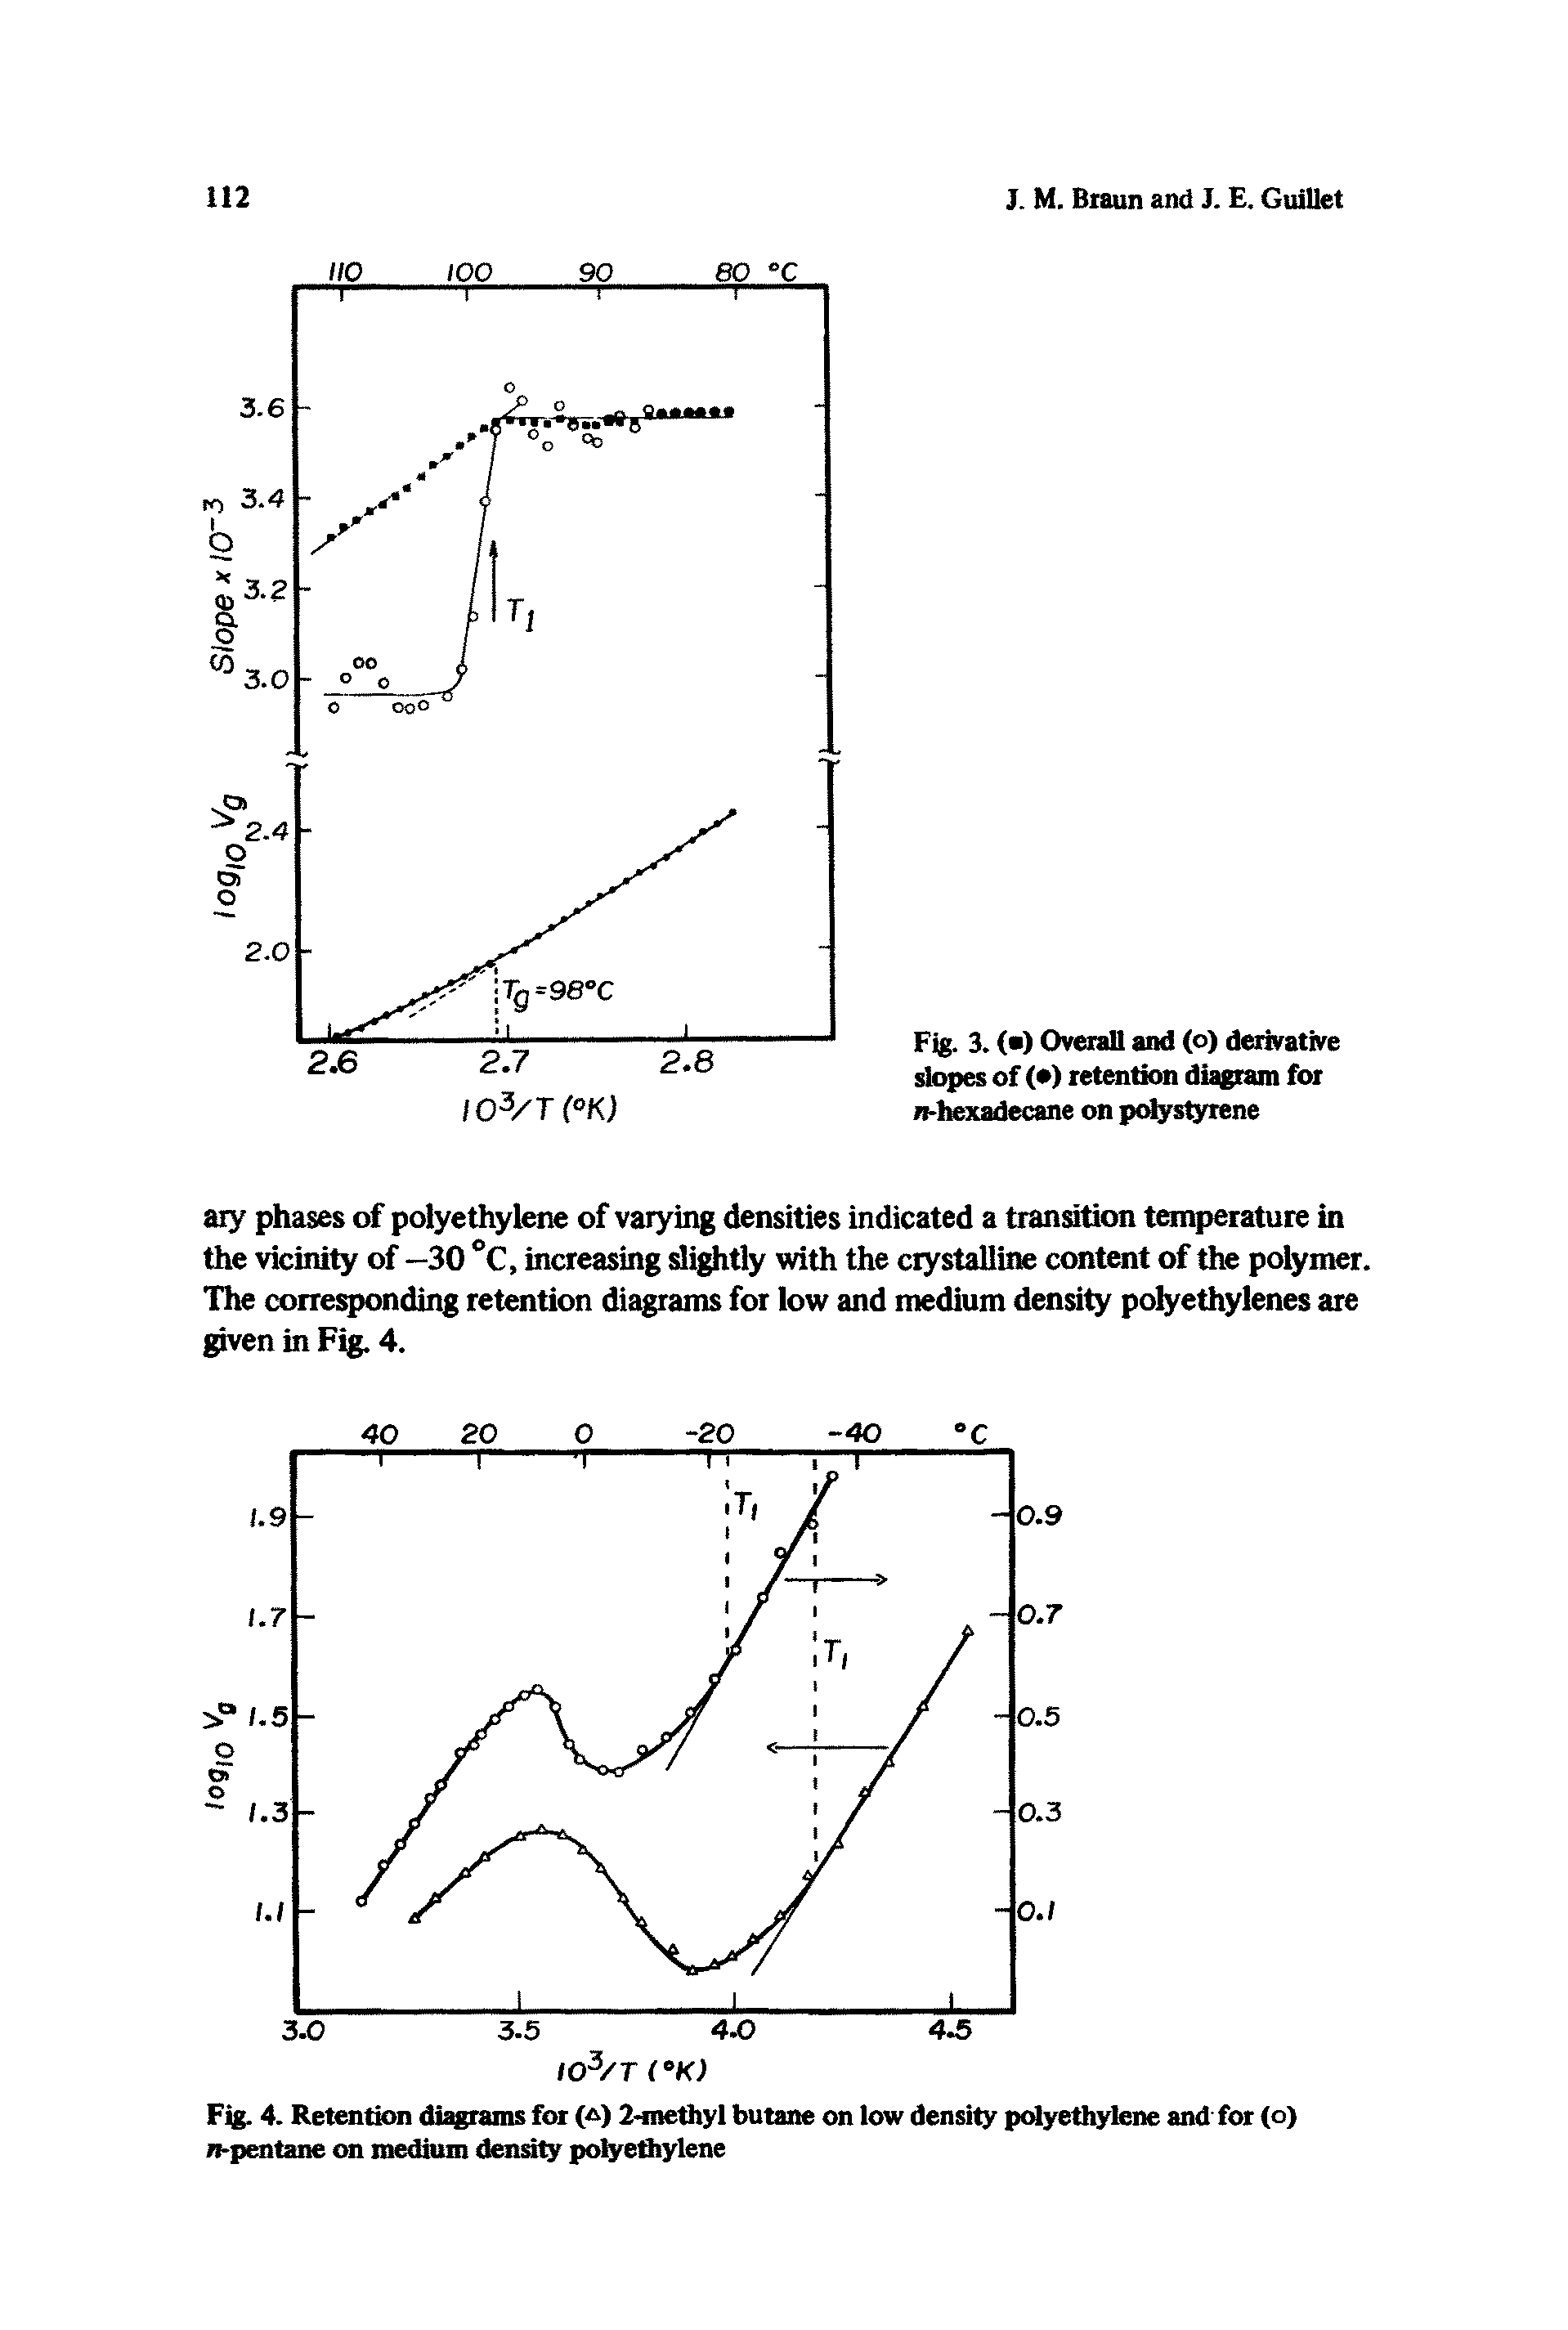 Fig. 4. Retention diagrams for ( ) 2-methyl butane on low density polyethylene and for (o) n-pentane on medium density polyethylene...